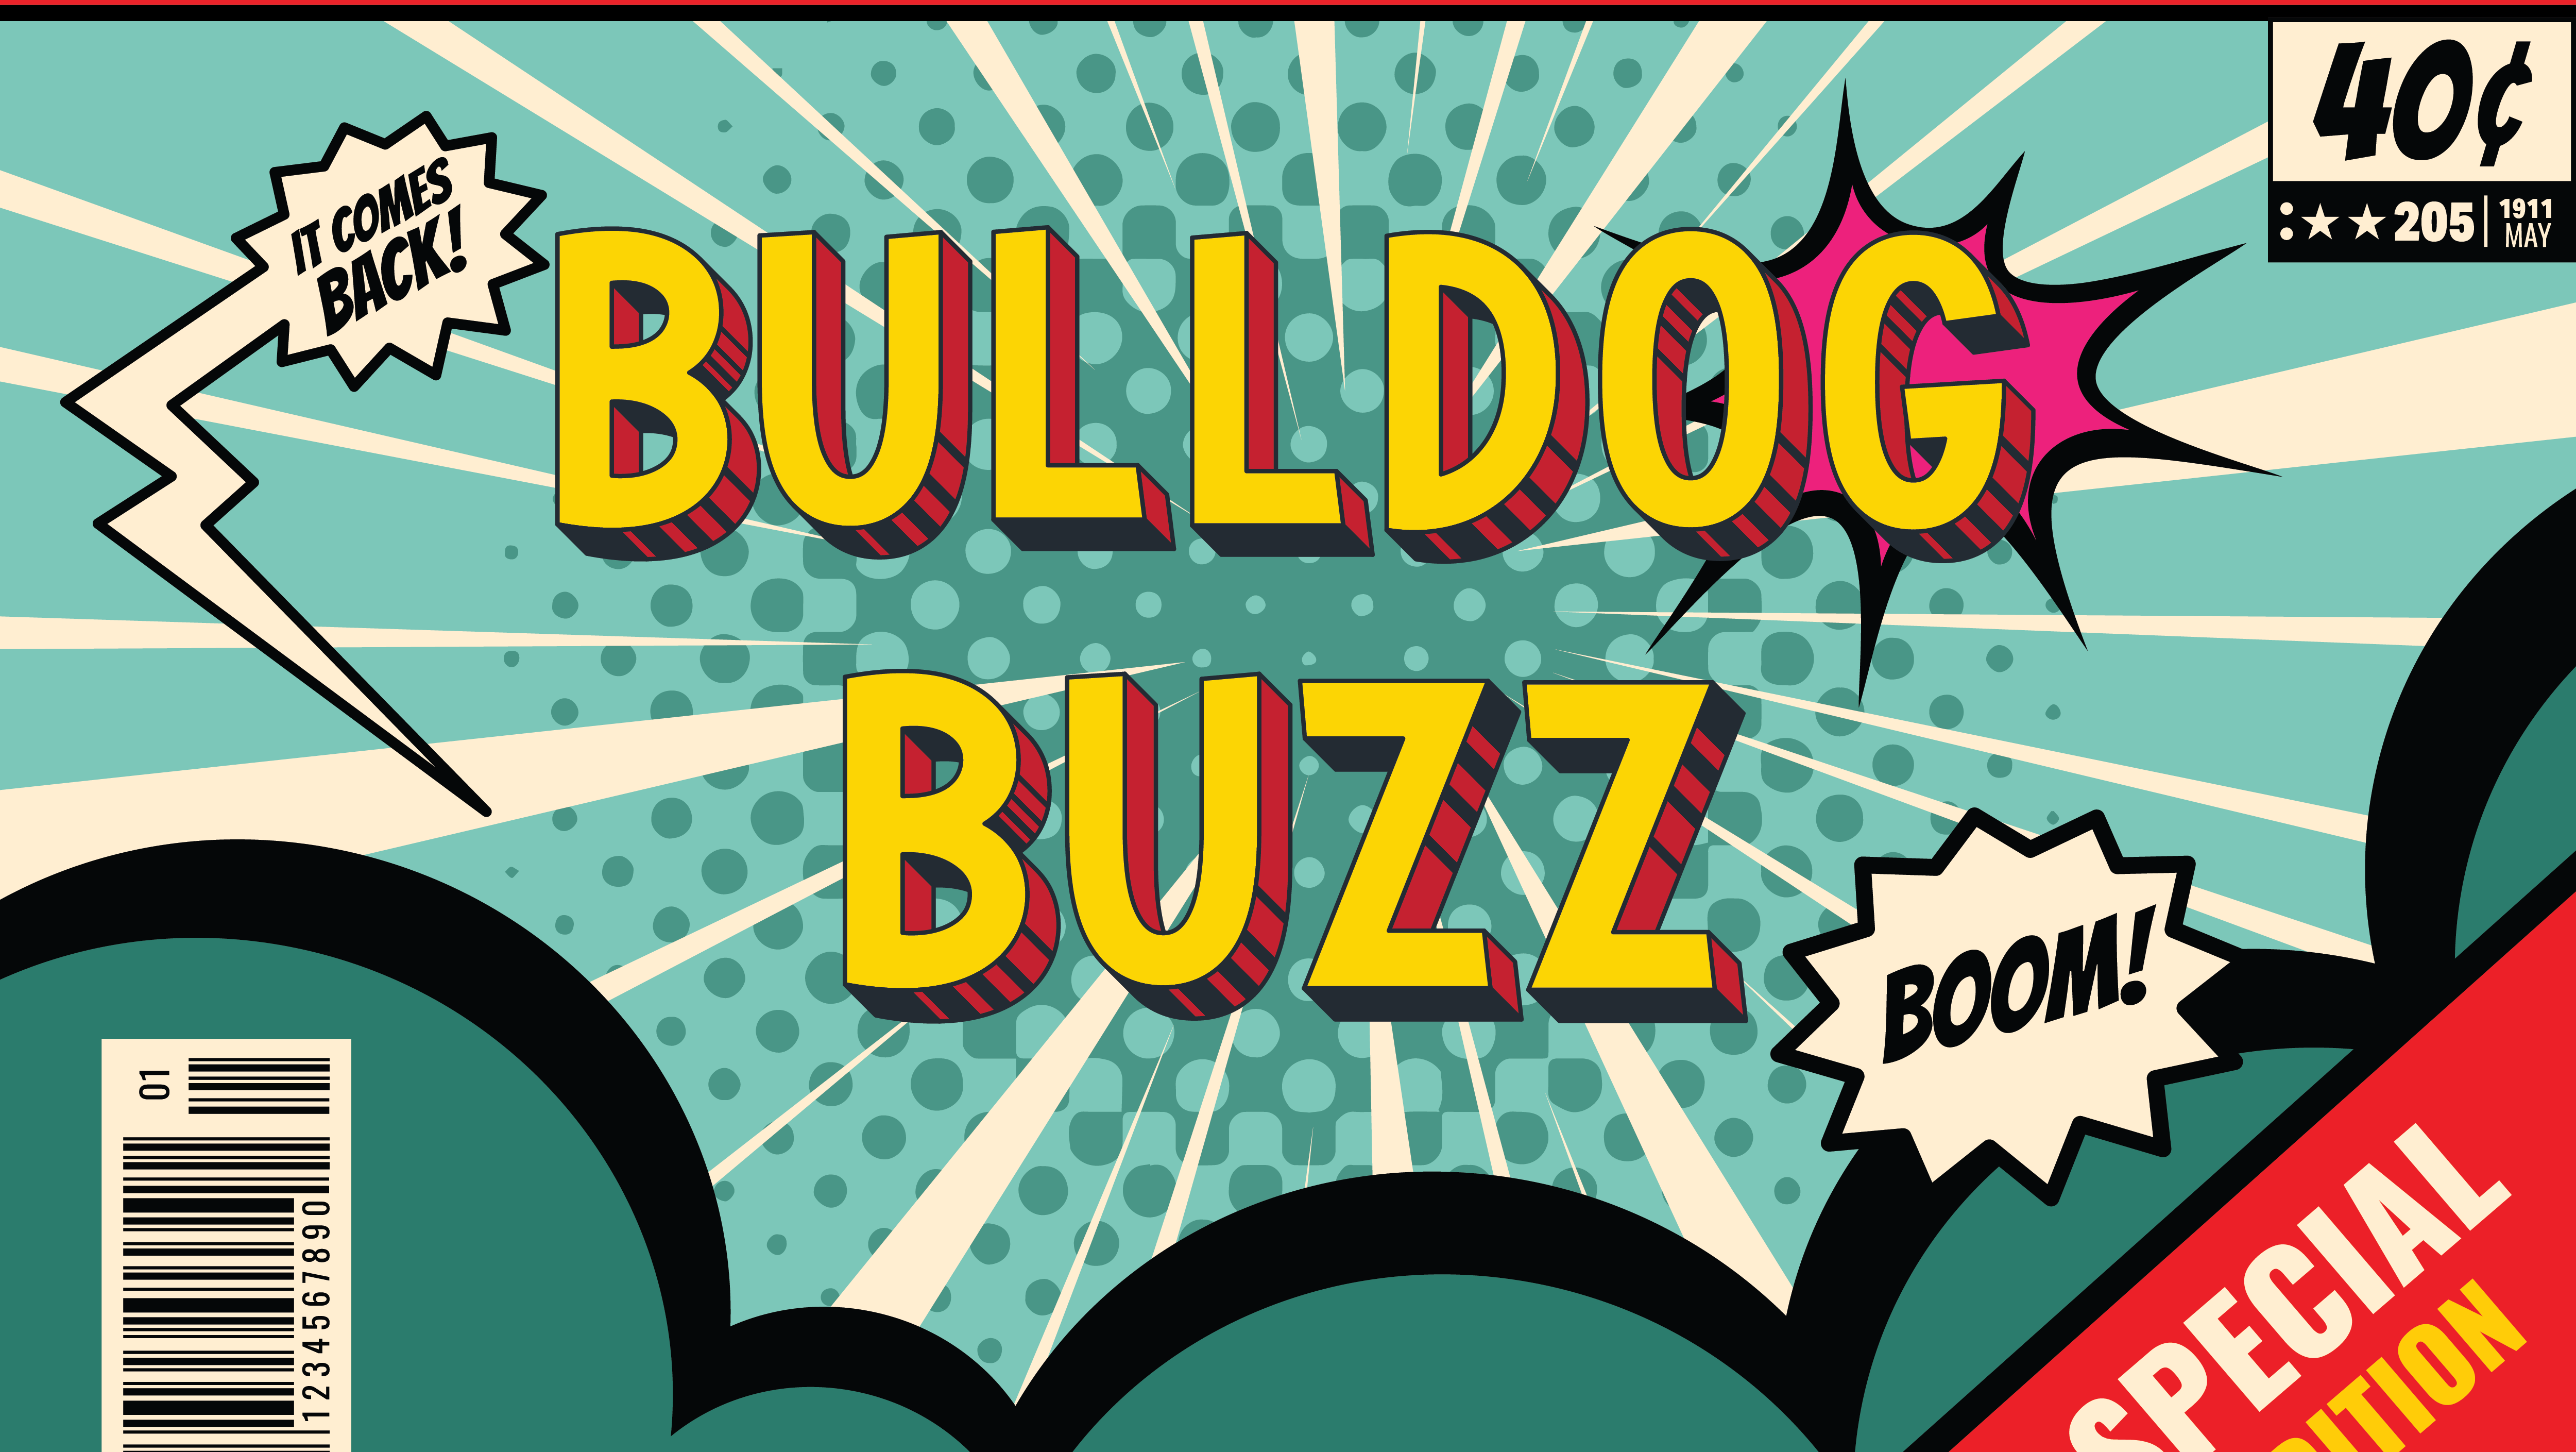 It comes back. Bulldog Buzz. Boom. 40 cent label.